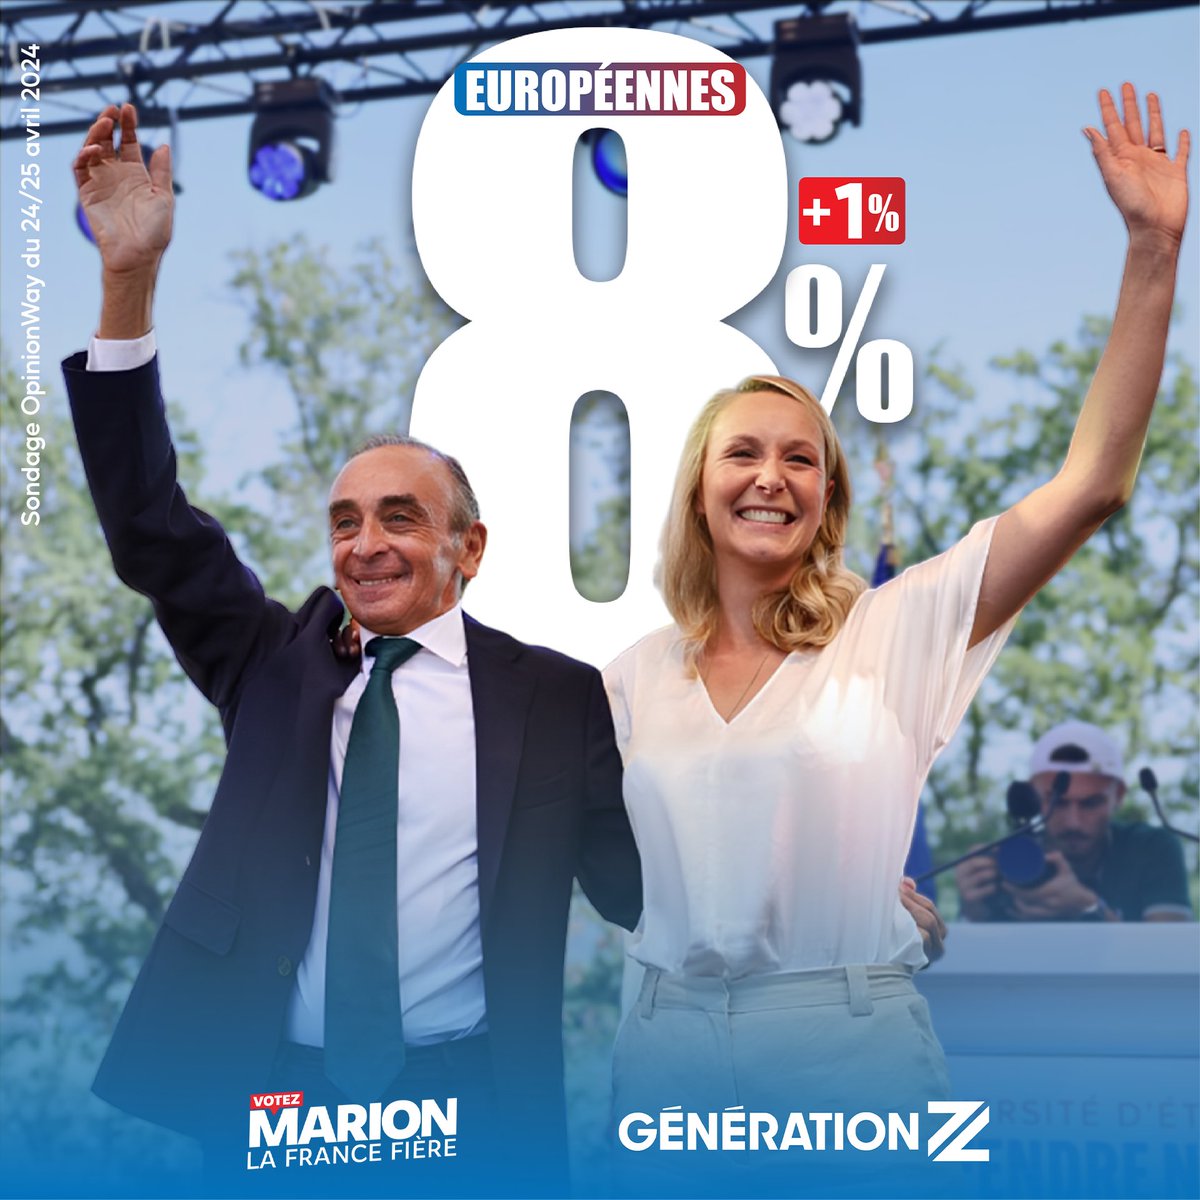 8% (+1) pour la liste de Reconquête menée par  Marion Marechal et soutenue par Éric Zemmour !

Nous obtiendrions 8 à 9 élus !

En 4e position, devant LR, EELV et LFI.

#VotezMarion